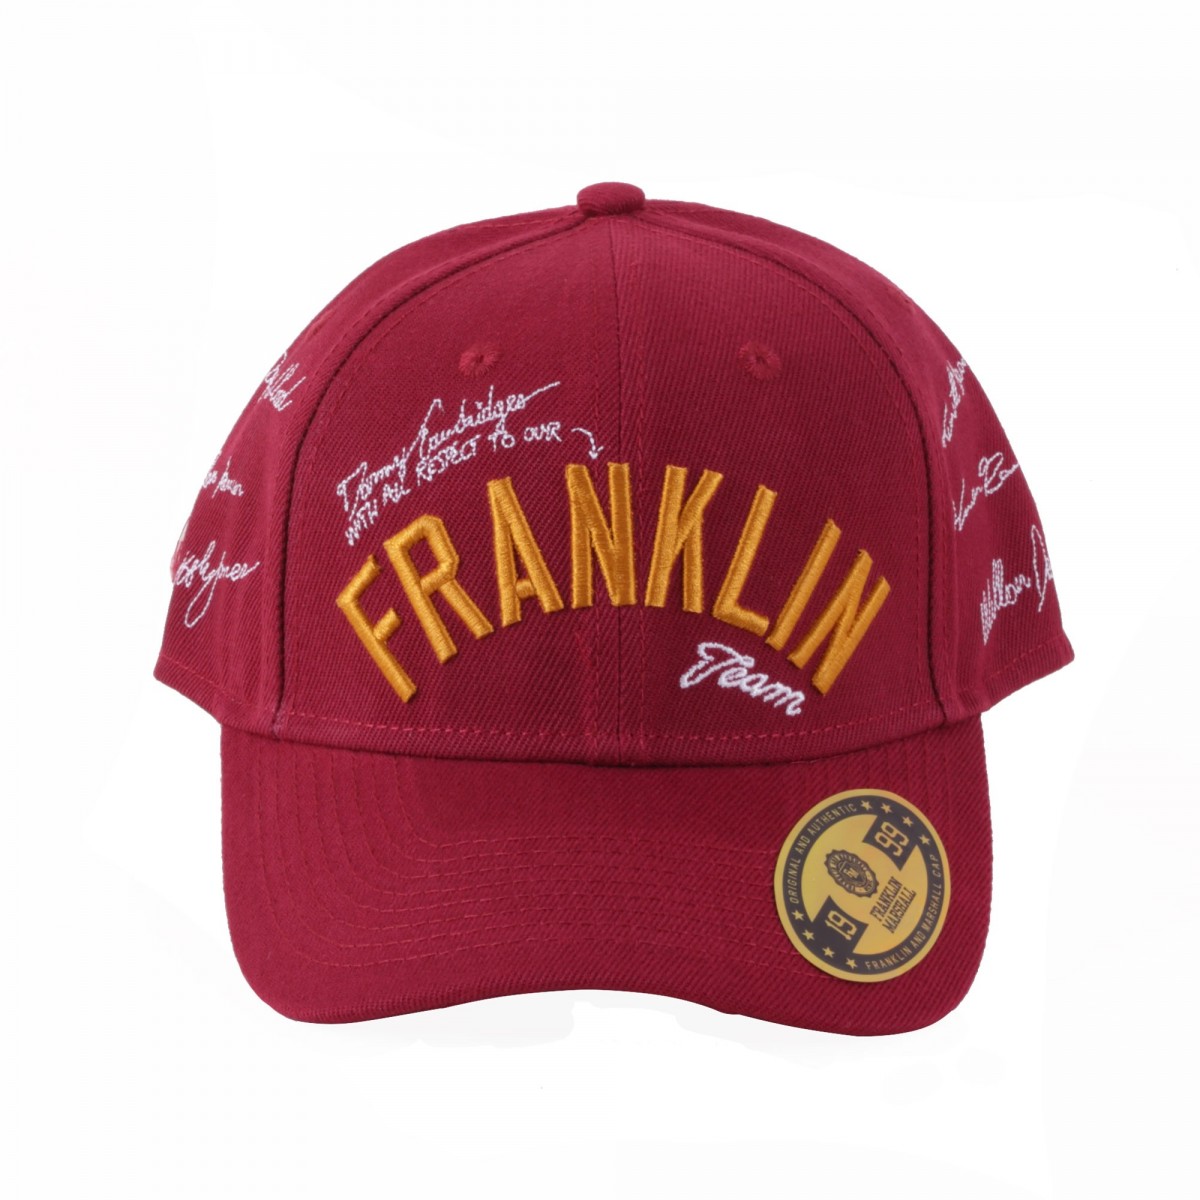 FRANKLIN CAPS